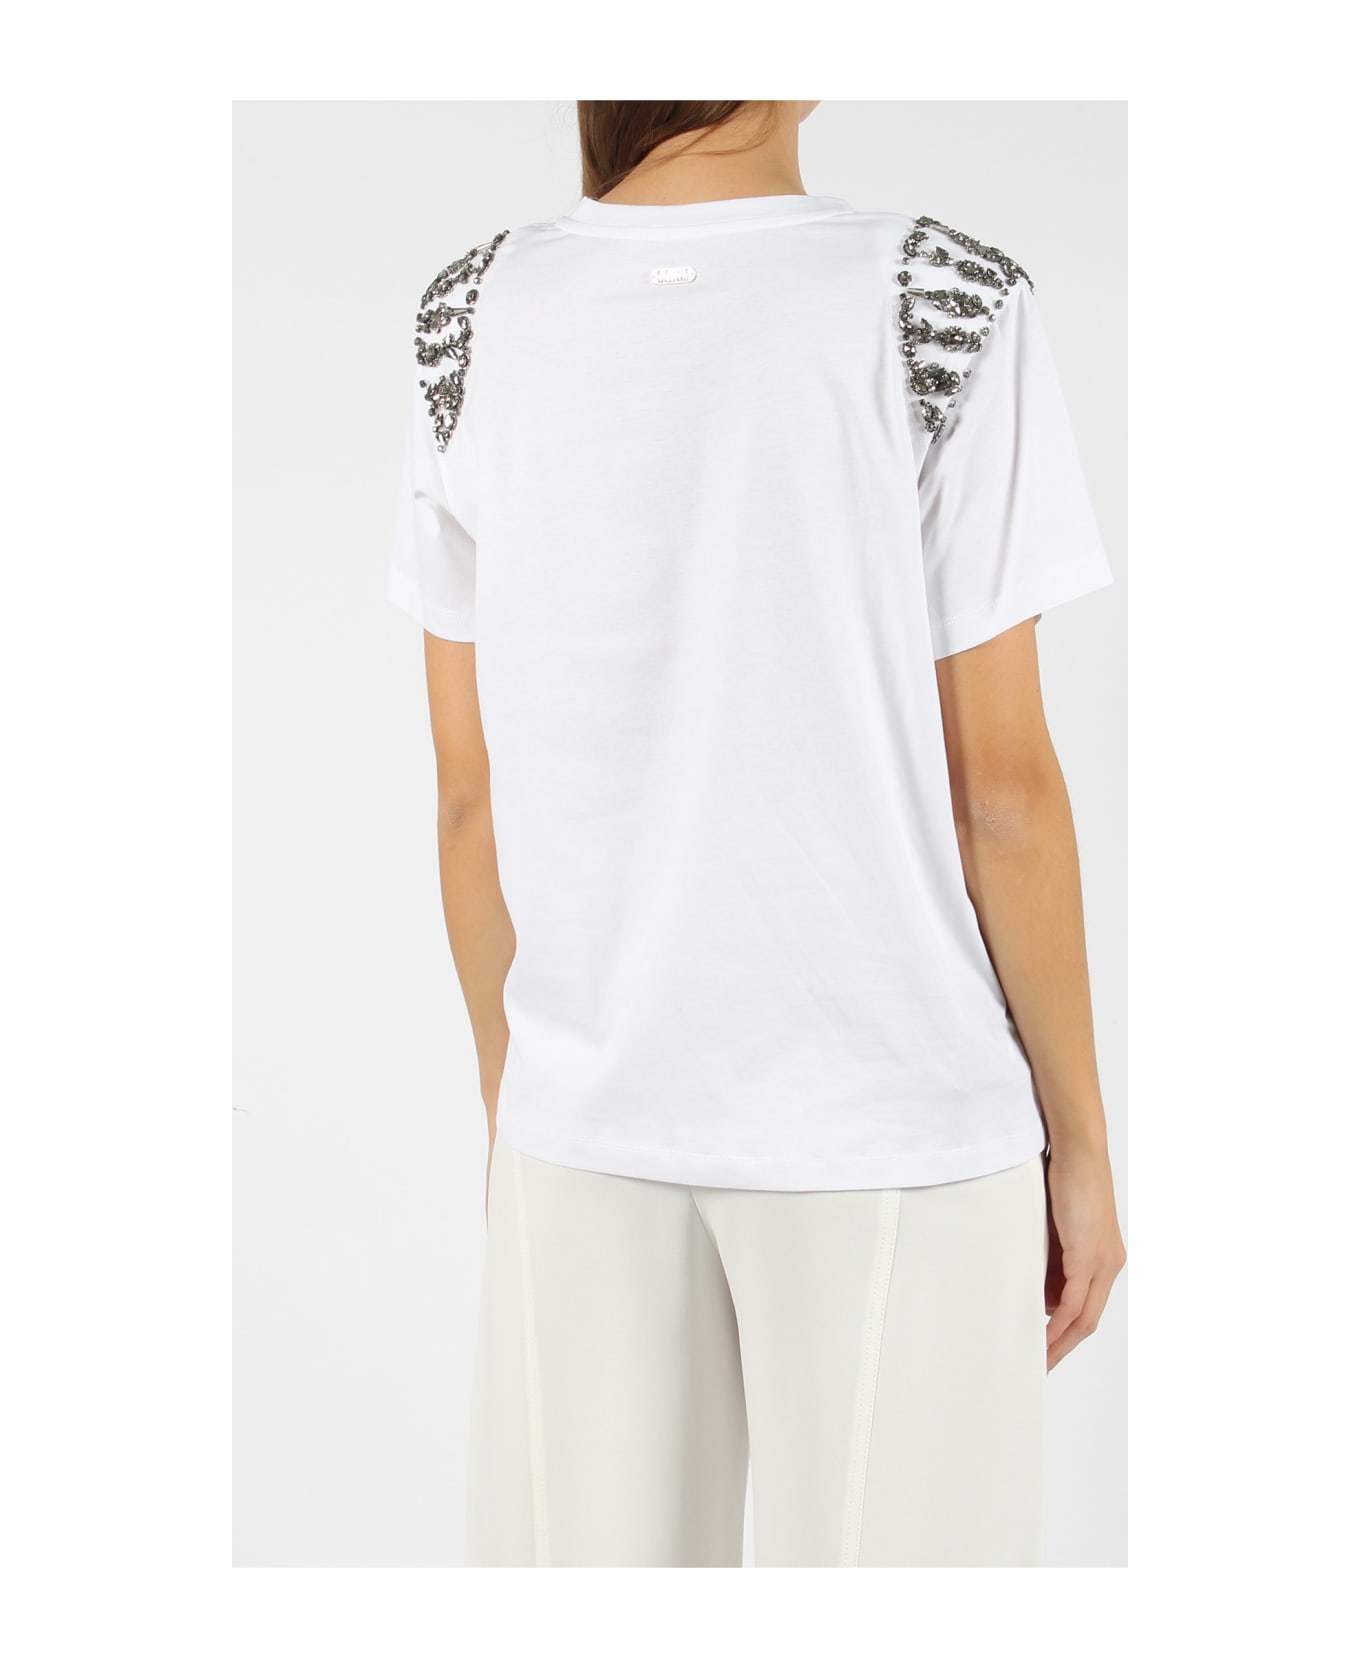 Alberta Ferretti Embroidered Cotton T-shirt - White Tシャツ